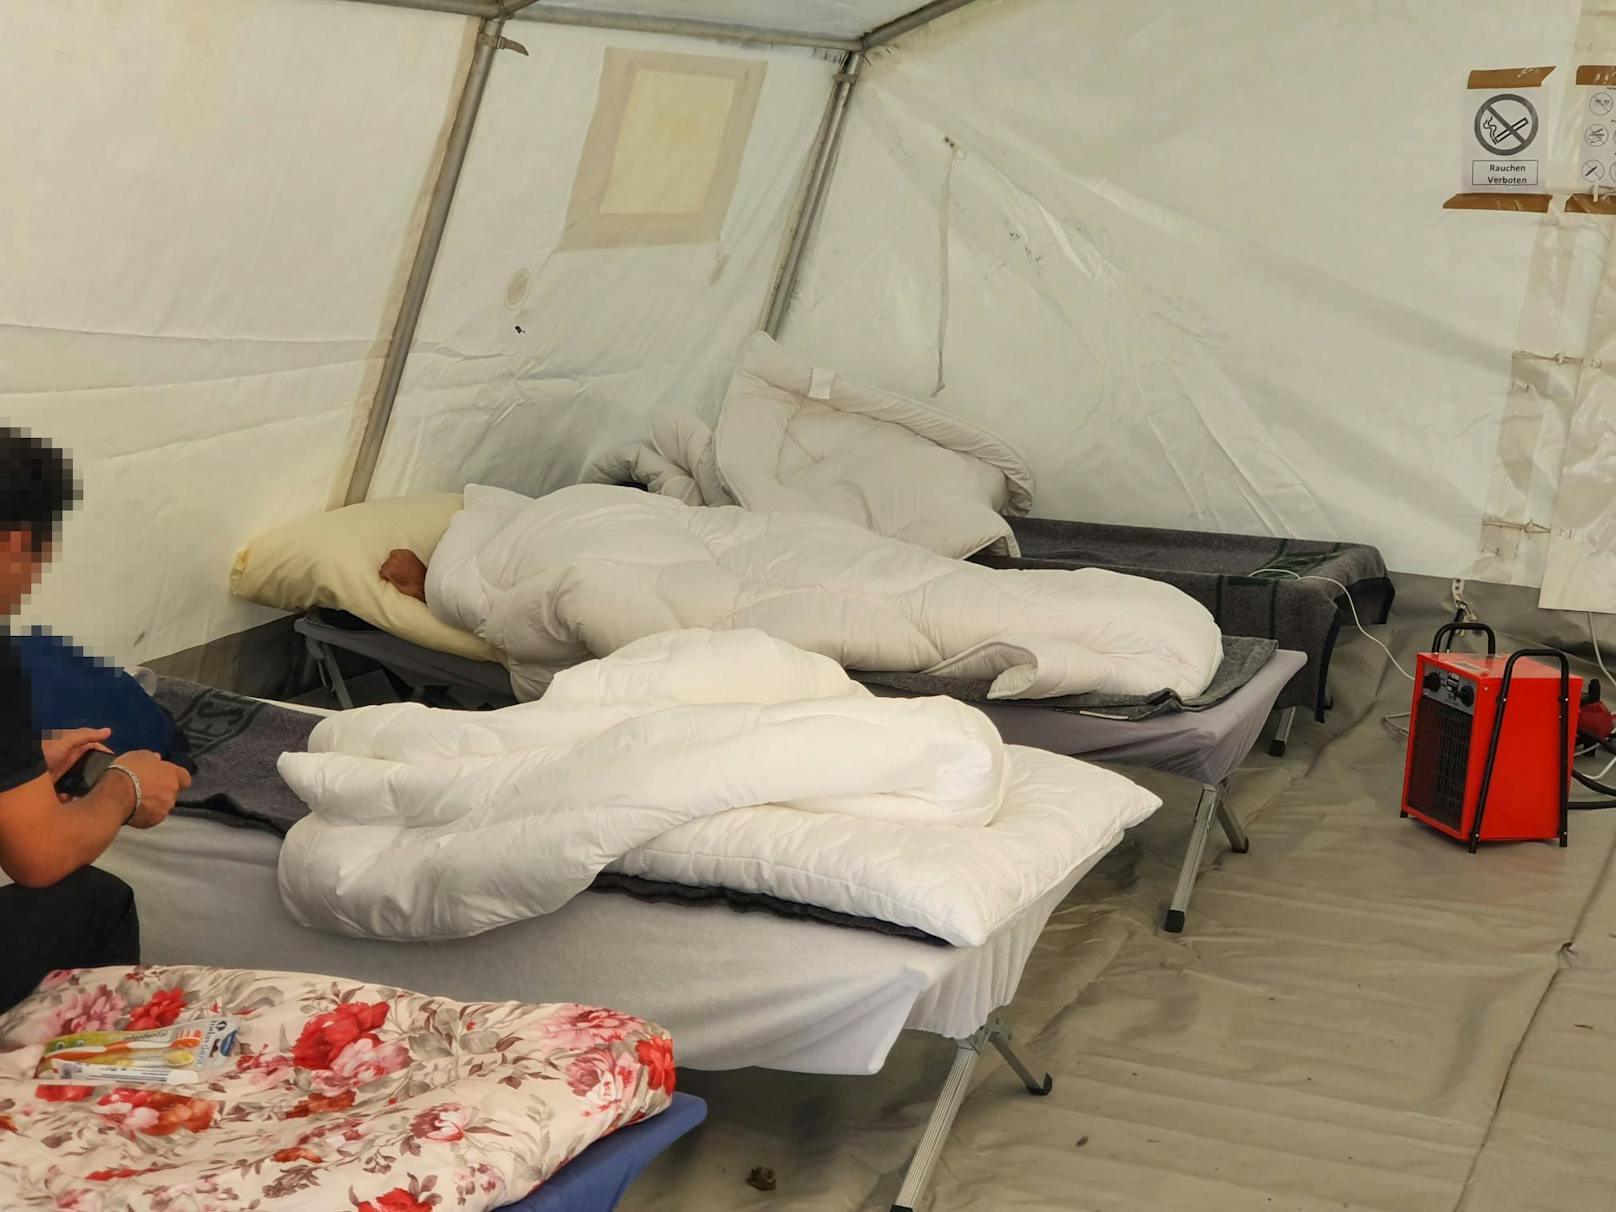 Asyl-Notstand – so schaut es in den Zelten wirklich aus